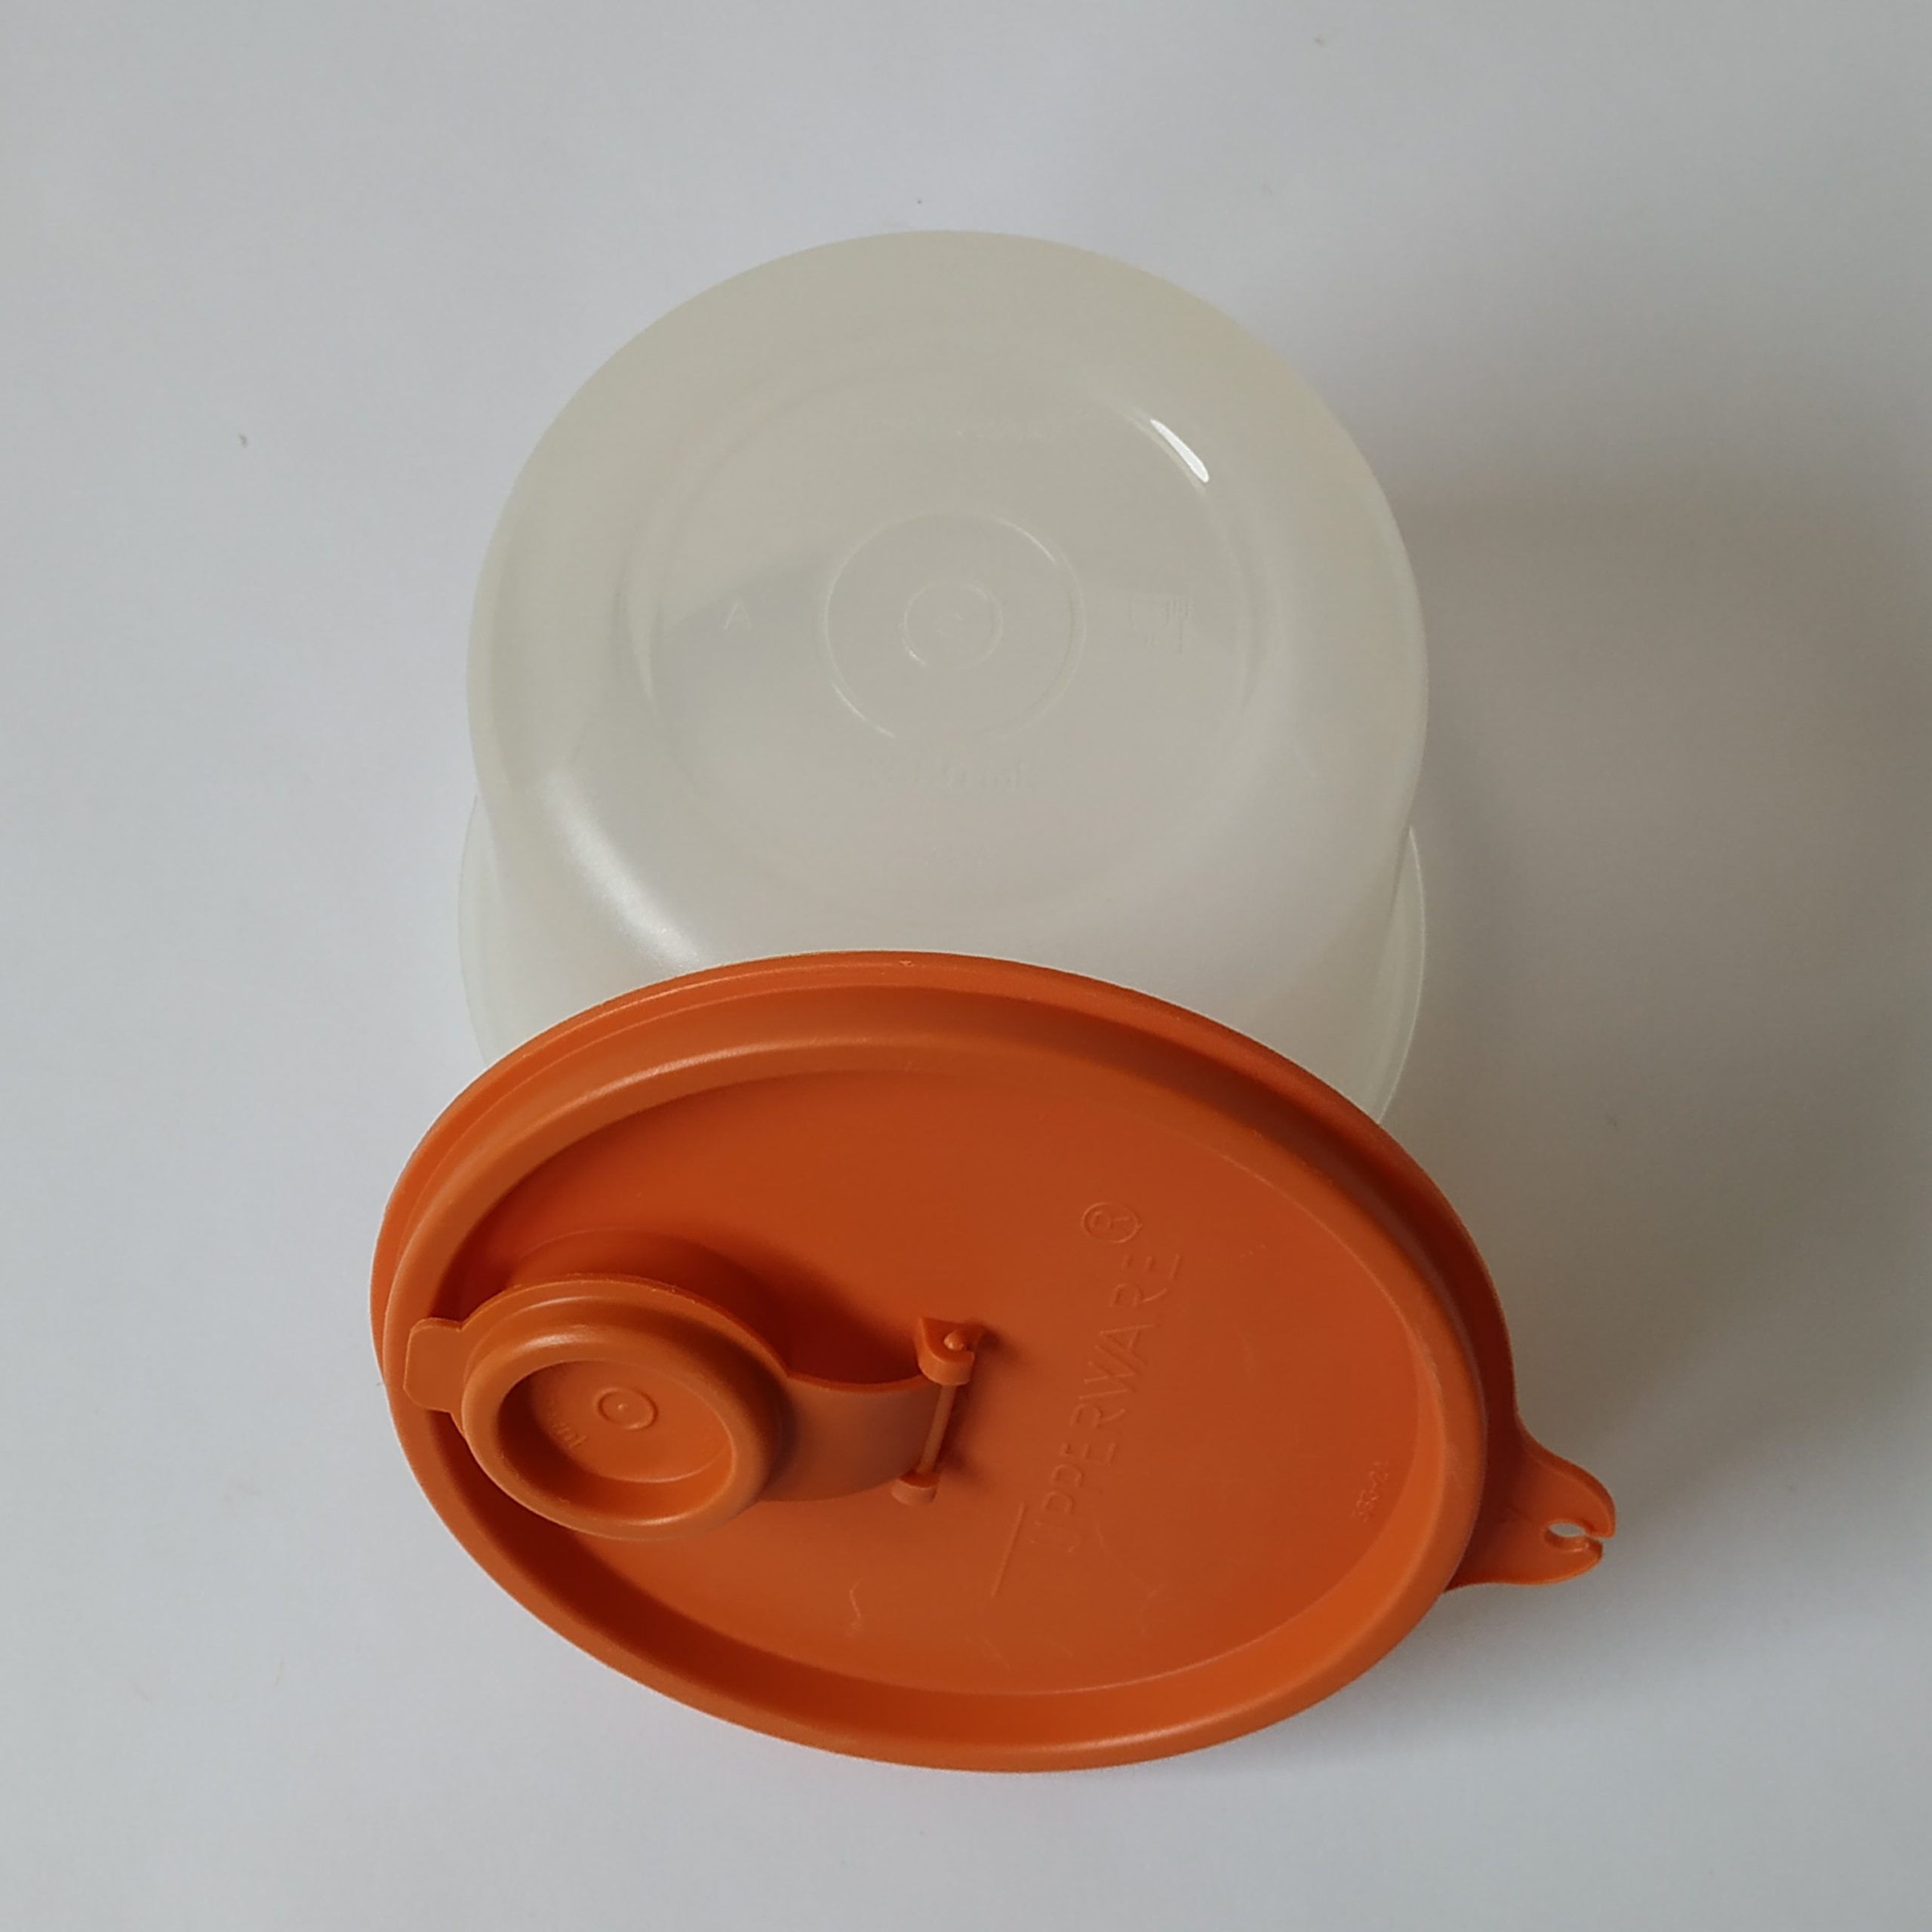 Bakje Tupperware met oranje deksel-schenker – inhoud 550 ml – diameter 11,5 cm – hoogte 10 cm (4)